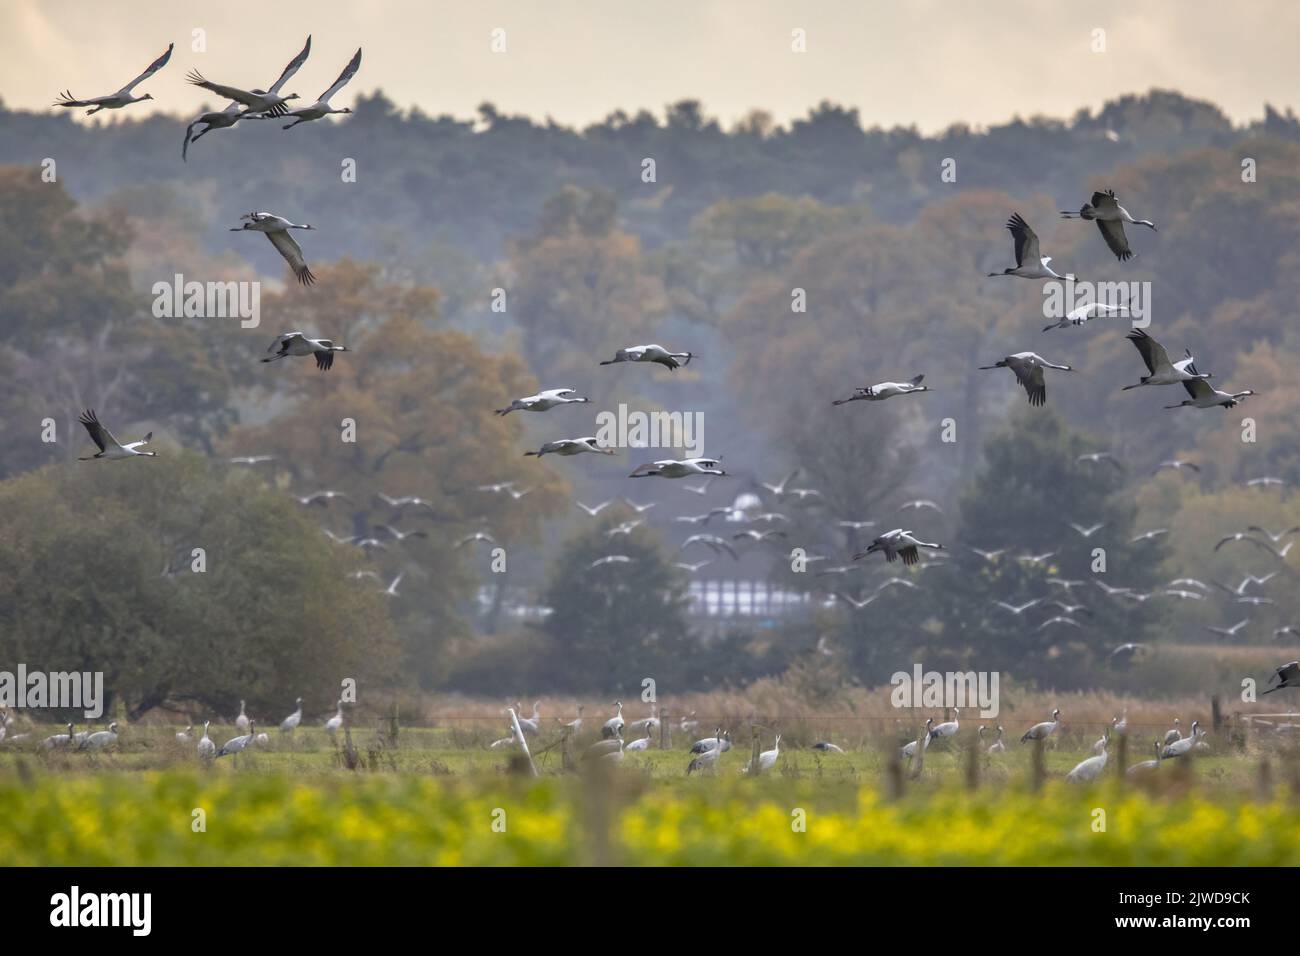 Des groupes d'oiseaux de la grue commune (Grus Grus) en migration dans les habitats d'alimentation de la campagne allemande en octobre. Allemagne Banque D'Images